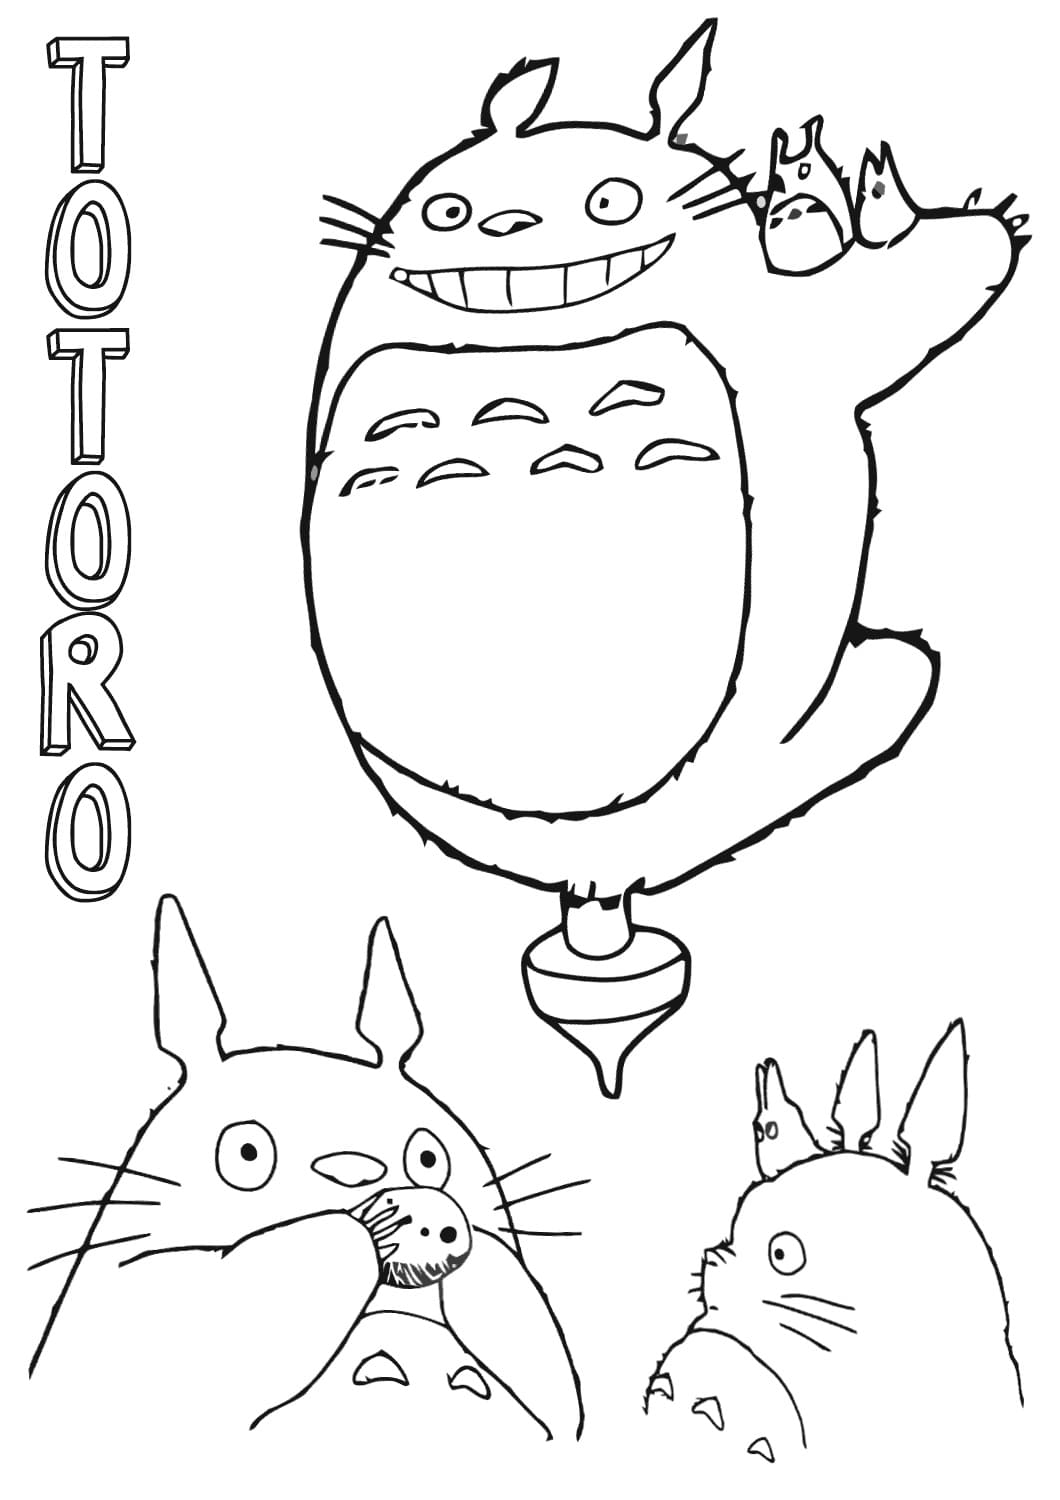 Kolorowanki Totoro 23 Mj sasiad Totoro do wydrukowania i pokolorowania